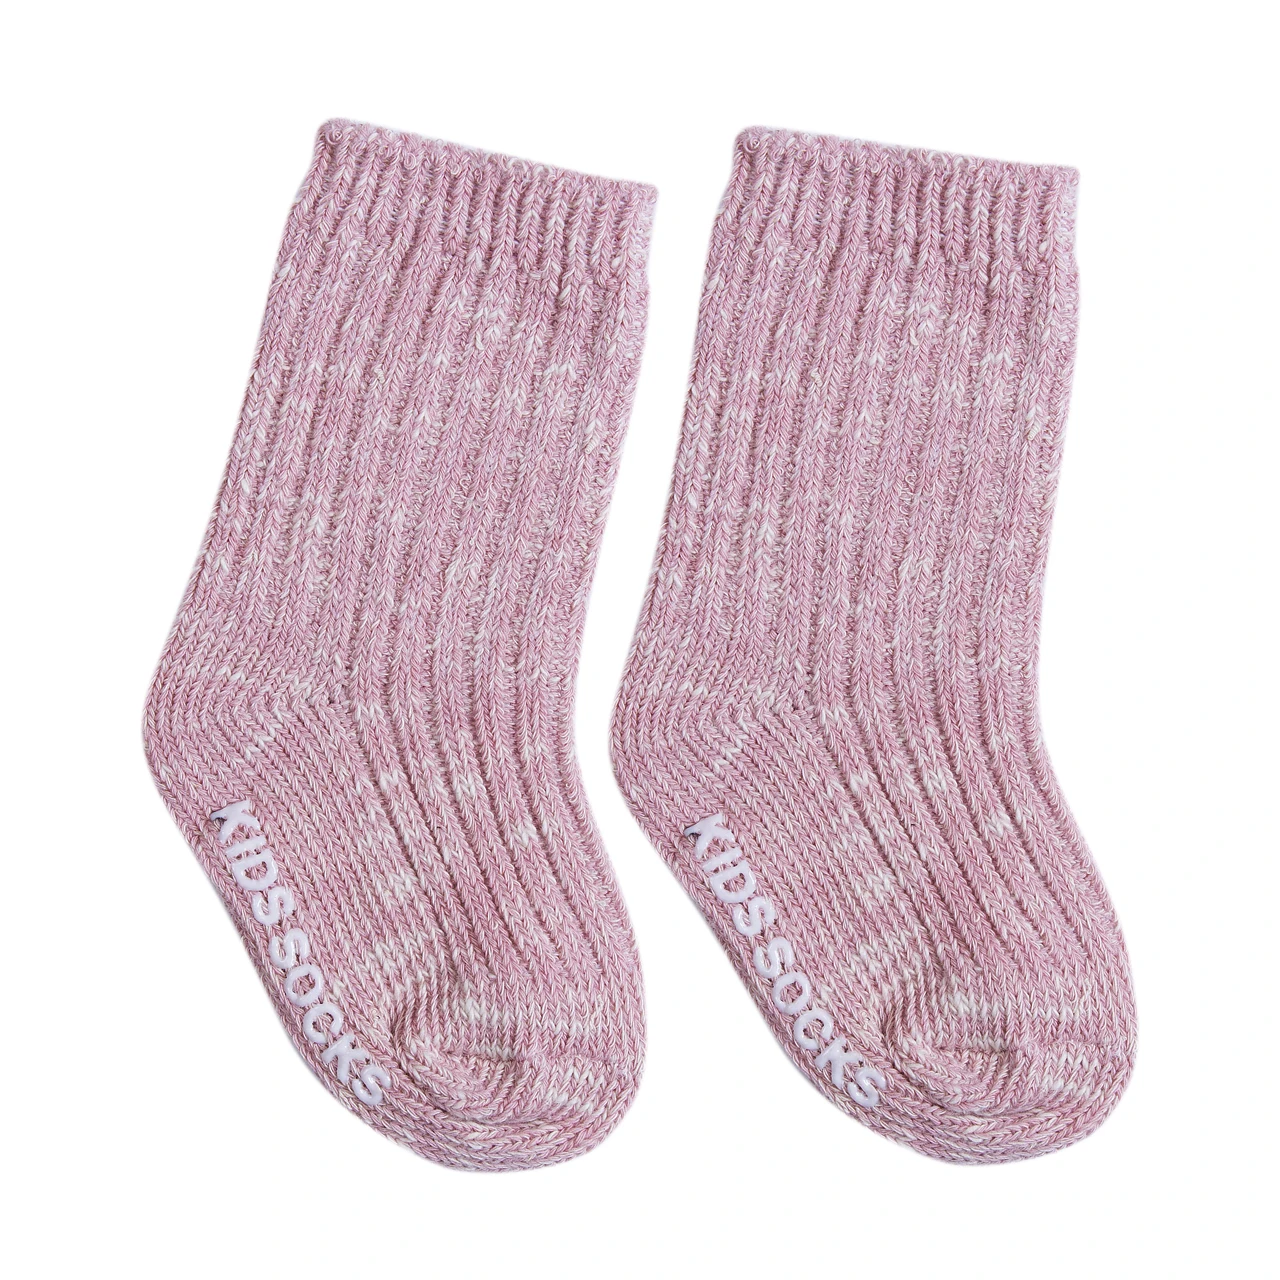 Дети Малыши; девочки, мальчик носки сплошной цвет вязания шерсти детские зимние теплые носки для мальчиков и девочек ясельного возраста гетры - Цвет: Розовый